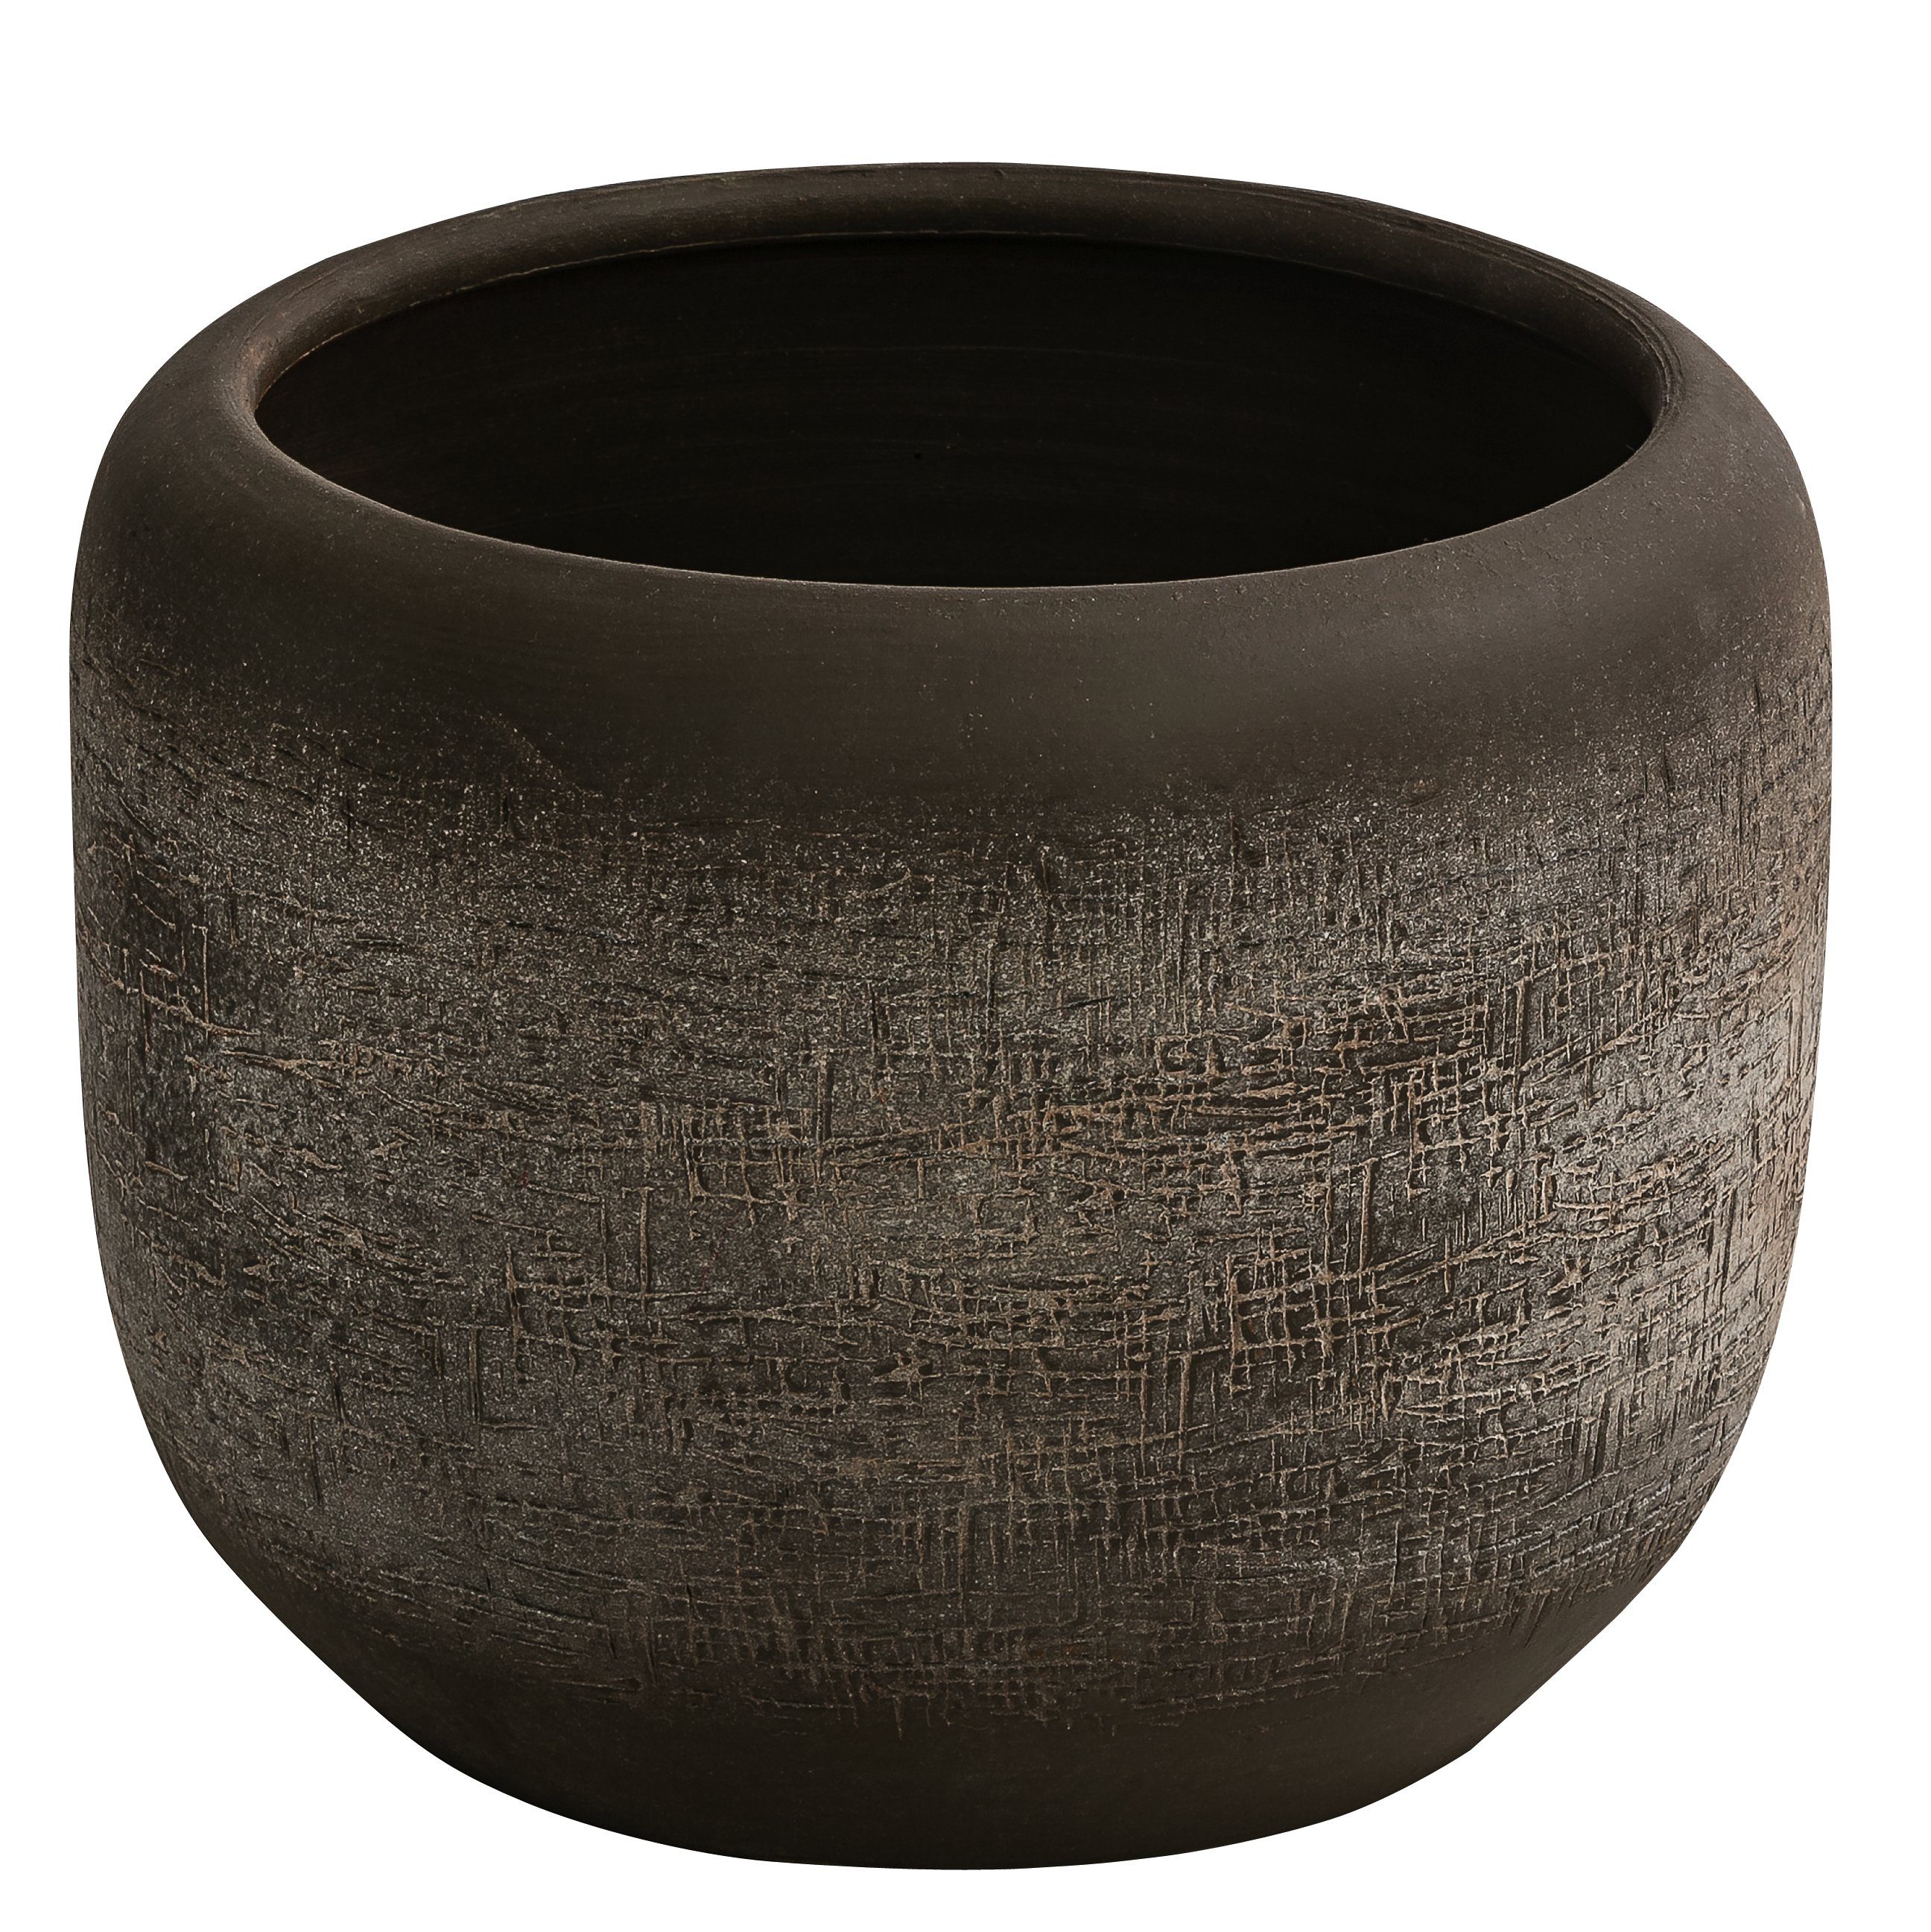 Dehner Übertopf Romy, Ø 24 - 29 cm, Höhe 20 - 26 cm, rund, Keramik, Übertopf mit reliefartiger Oberfläche, für Zimmerpflanzen